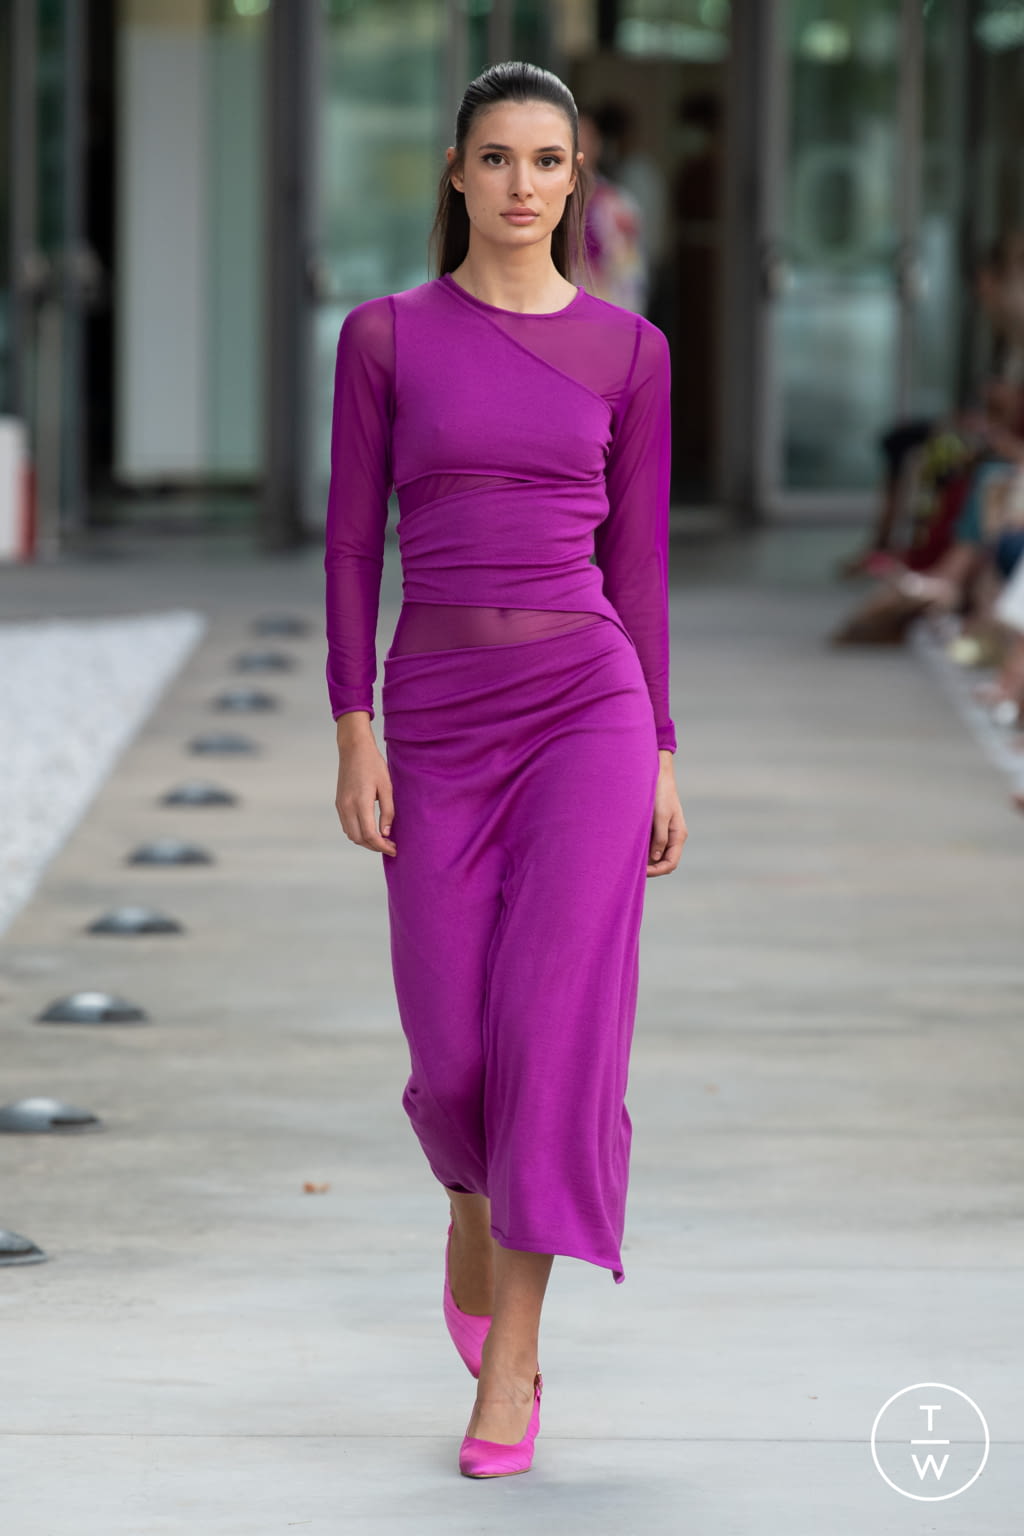 Laura Biagiotti SS22 womenswear #25 - Tagwalk: The Fashion Search Engine